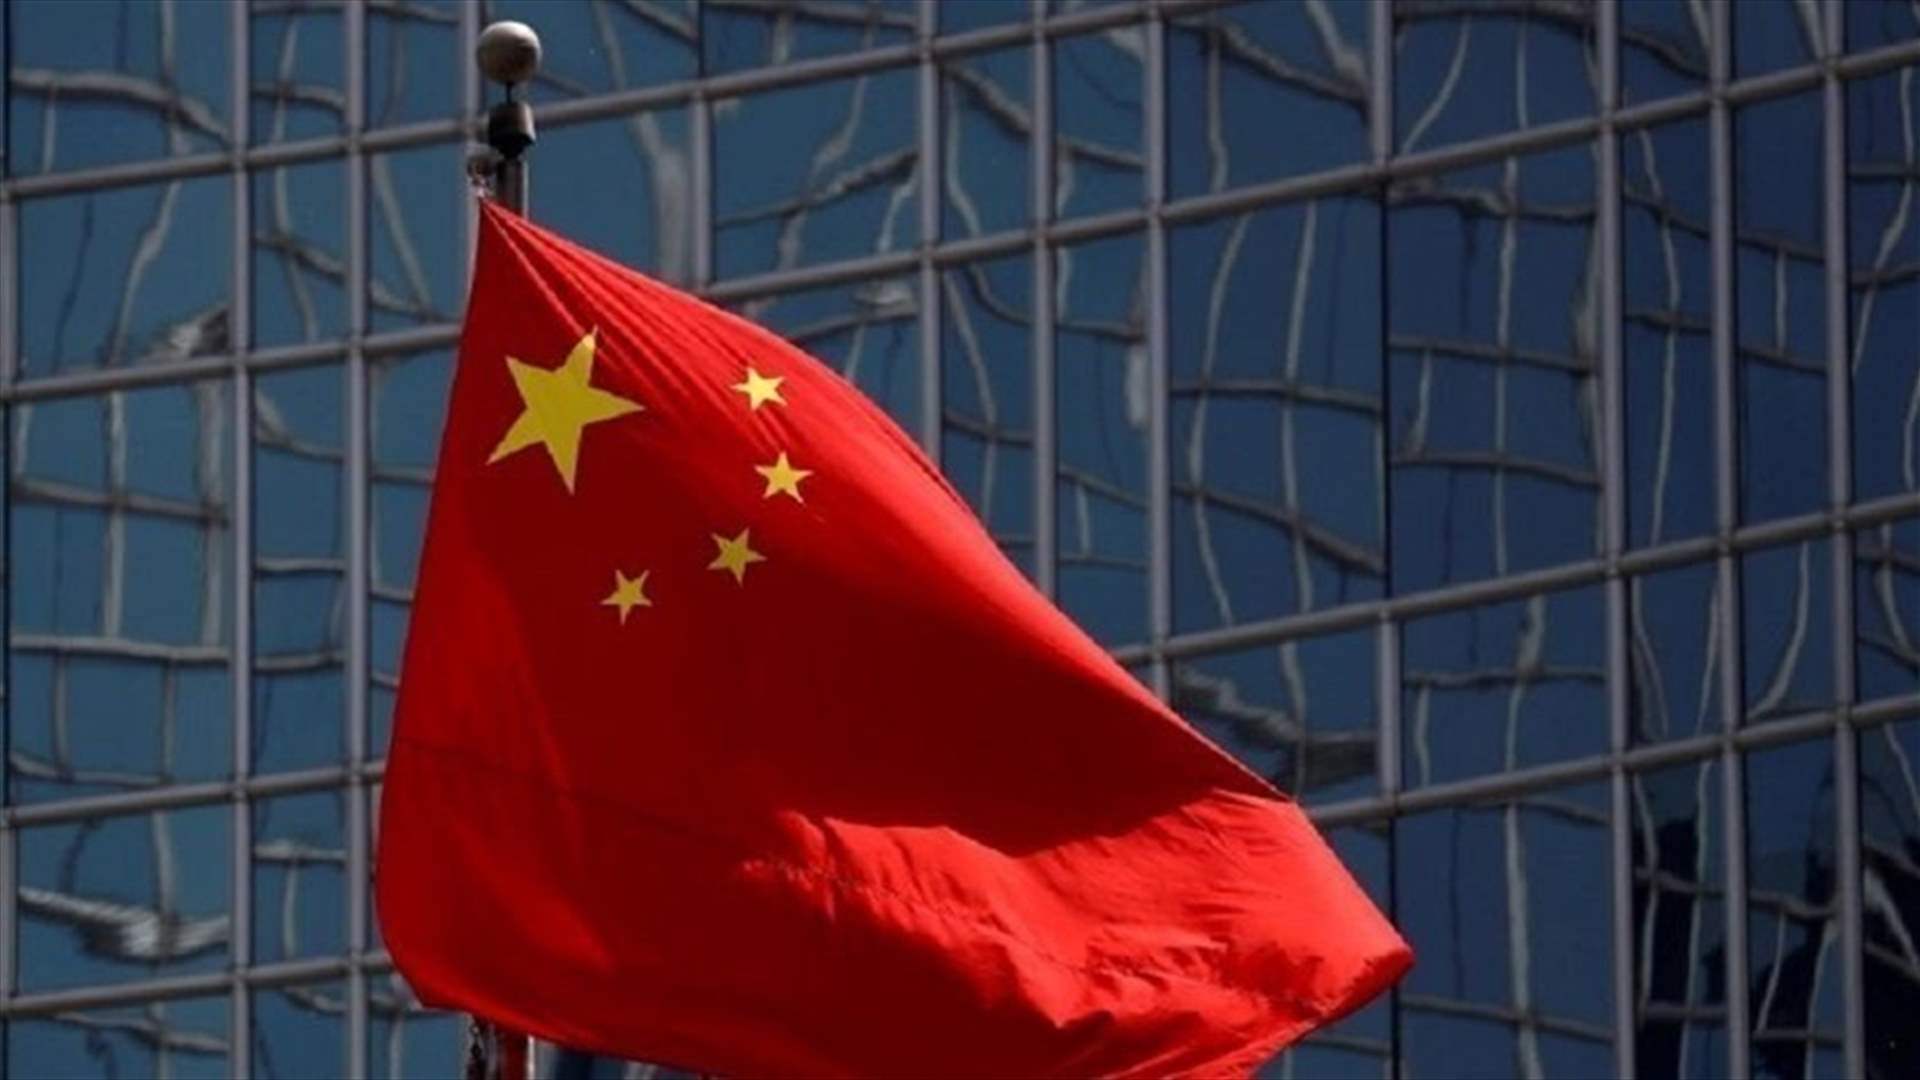 بكين تفرض عقوبات على شركتين أميركيتين في إطار مبيعات أسلحة إلى تايوان